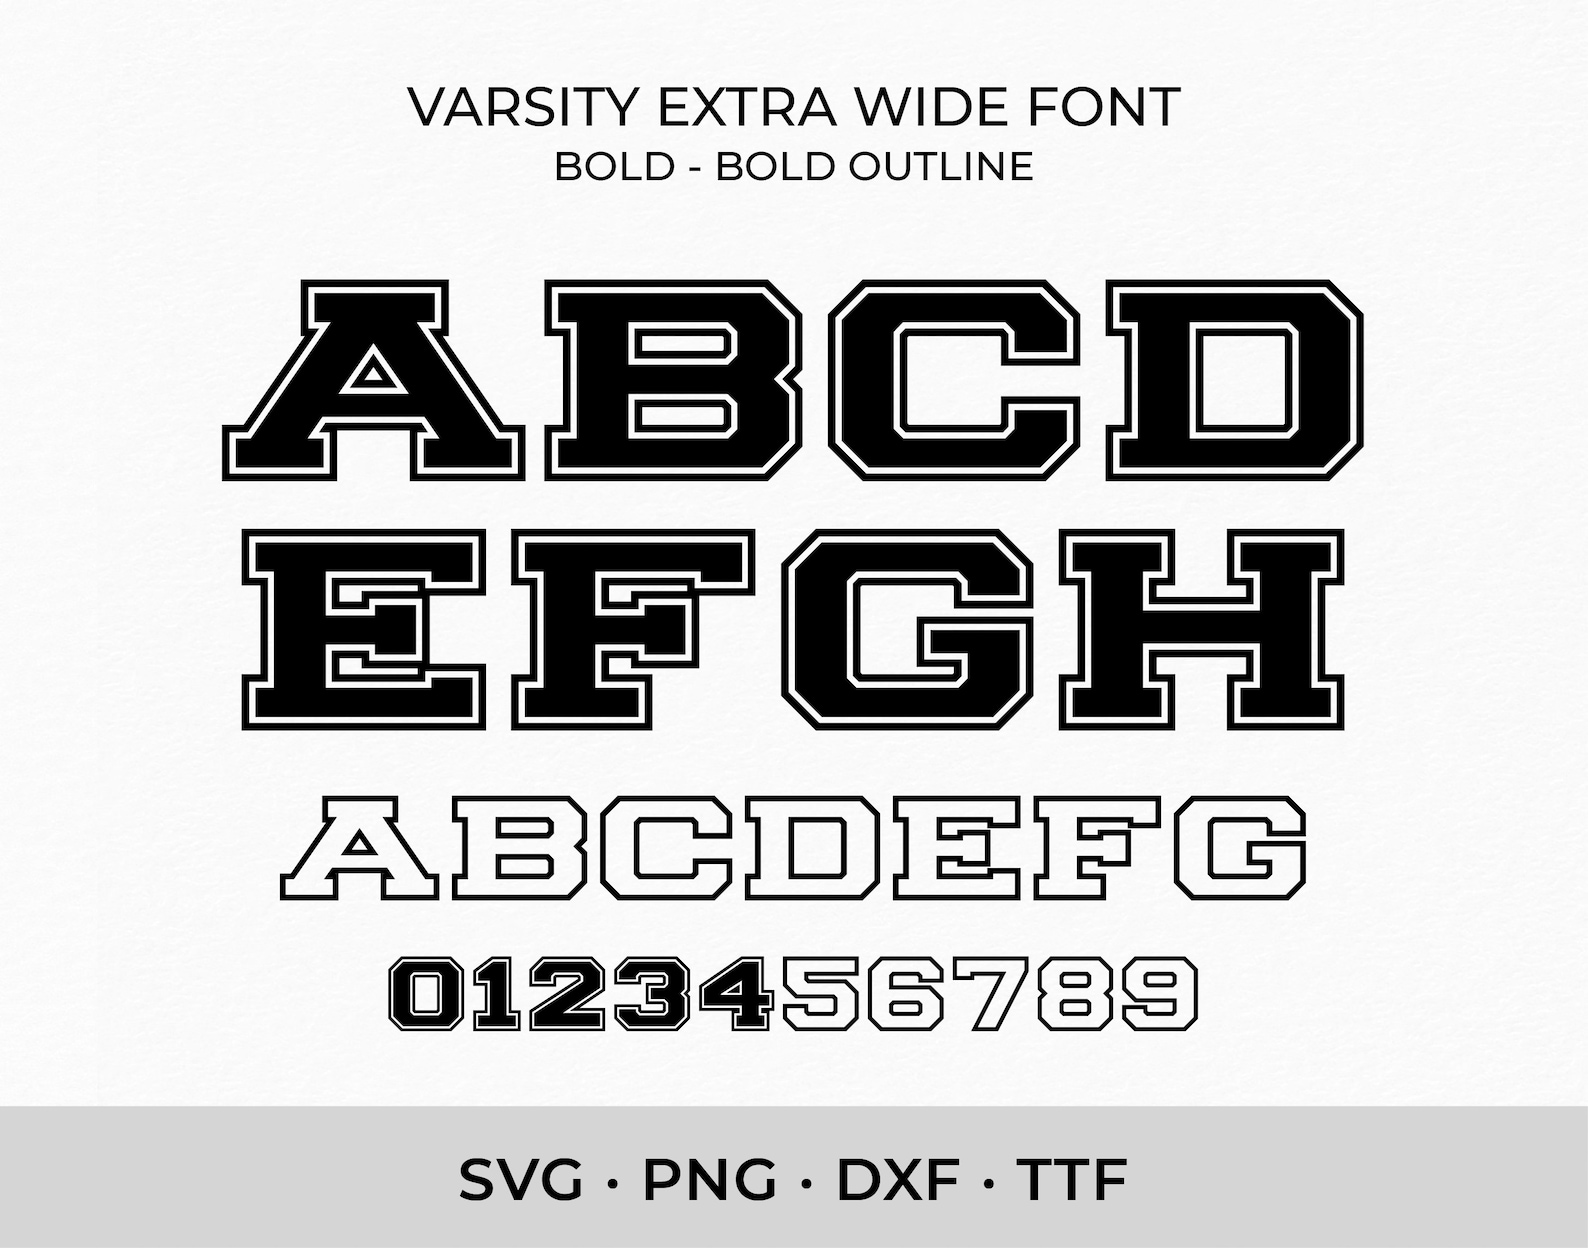 Varsity Font SVG TTF Extra Wide Bold College Font Svg Sports - Etsy